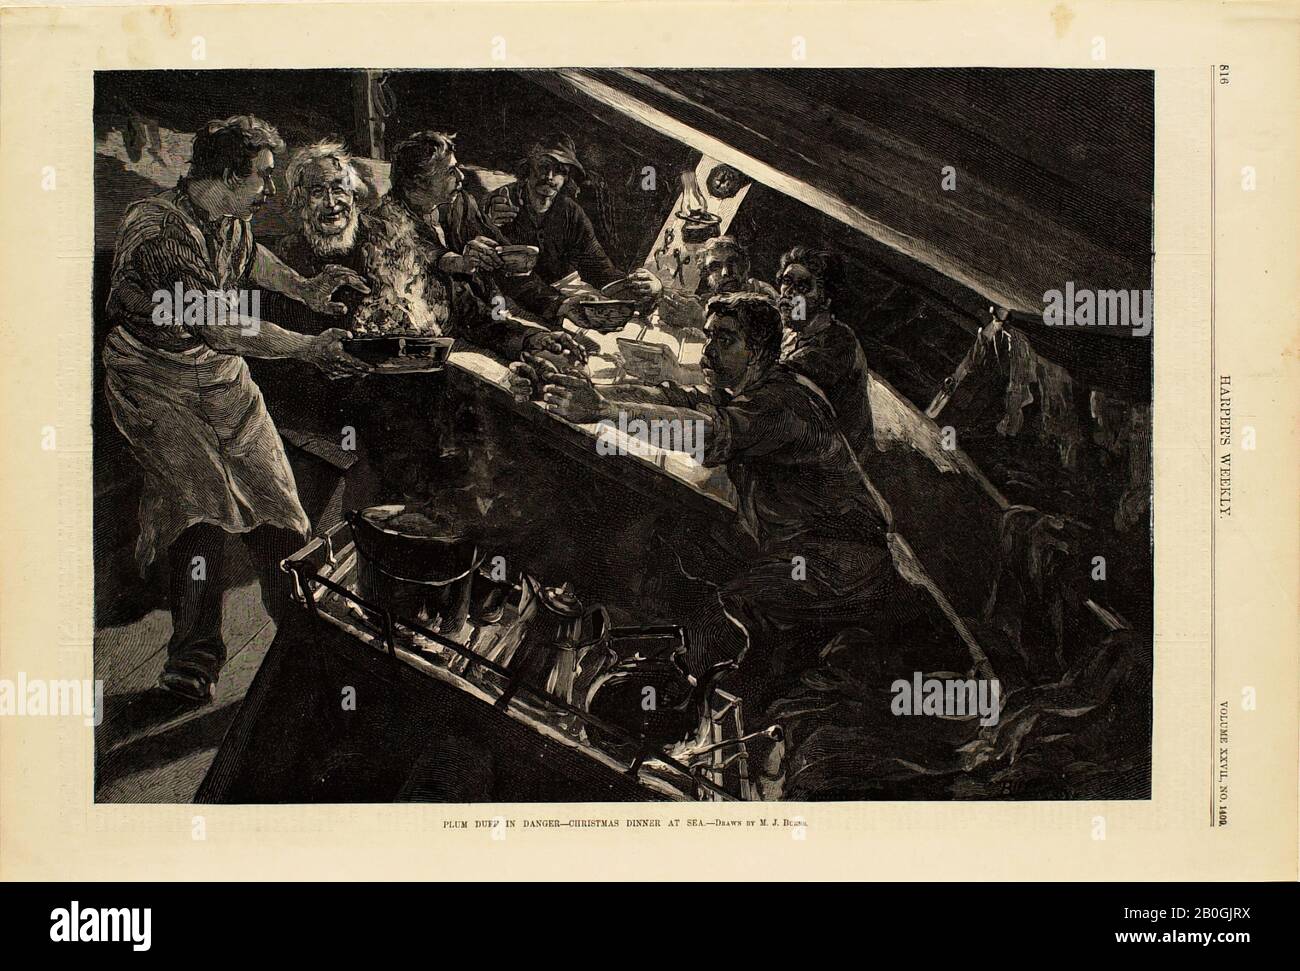 Milton J. Burns, amerikanisch, zwischen 1853-1933, Plum Duff in Danger-Christmas Dinner at Sea, 1883, Holzgravur auf Papier, Bild: 9 x 13 Zoll (22,8 x 33 cm Stockfoto